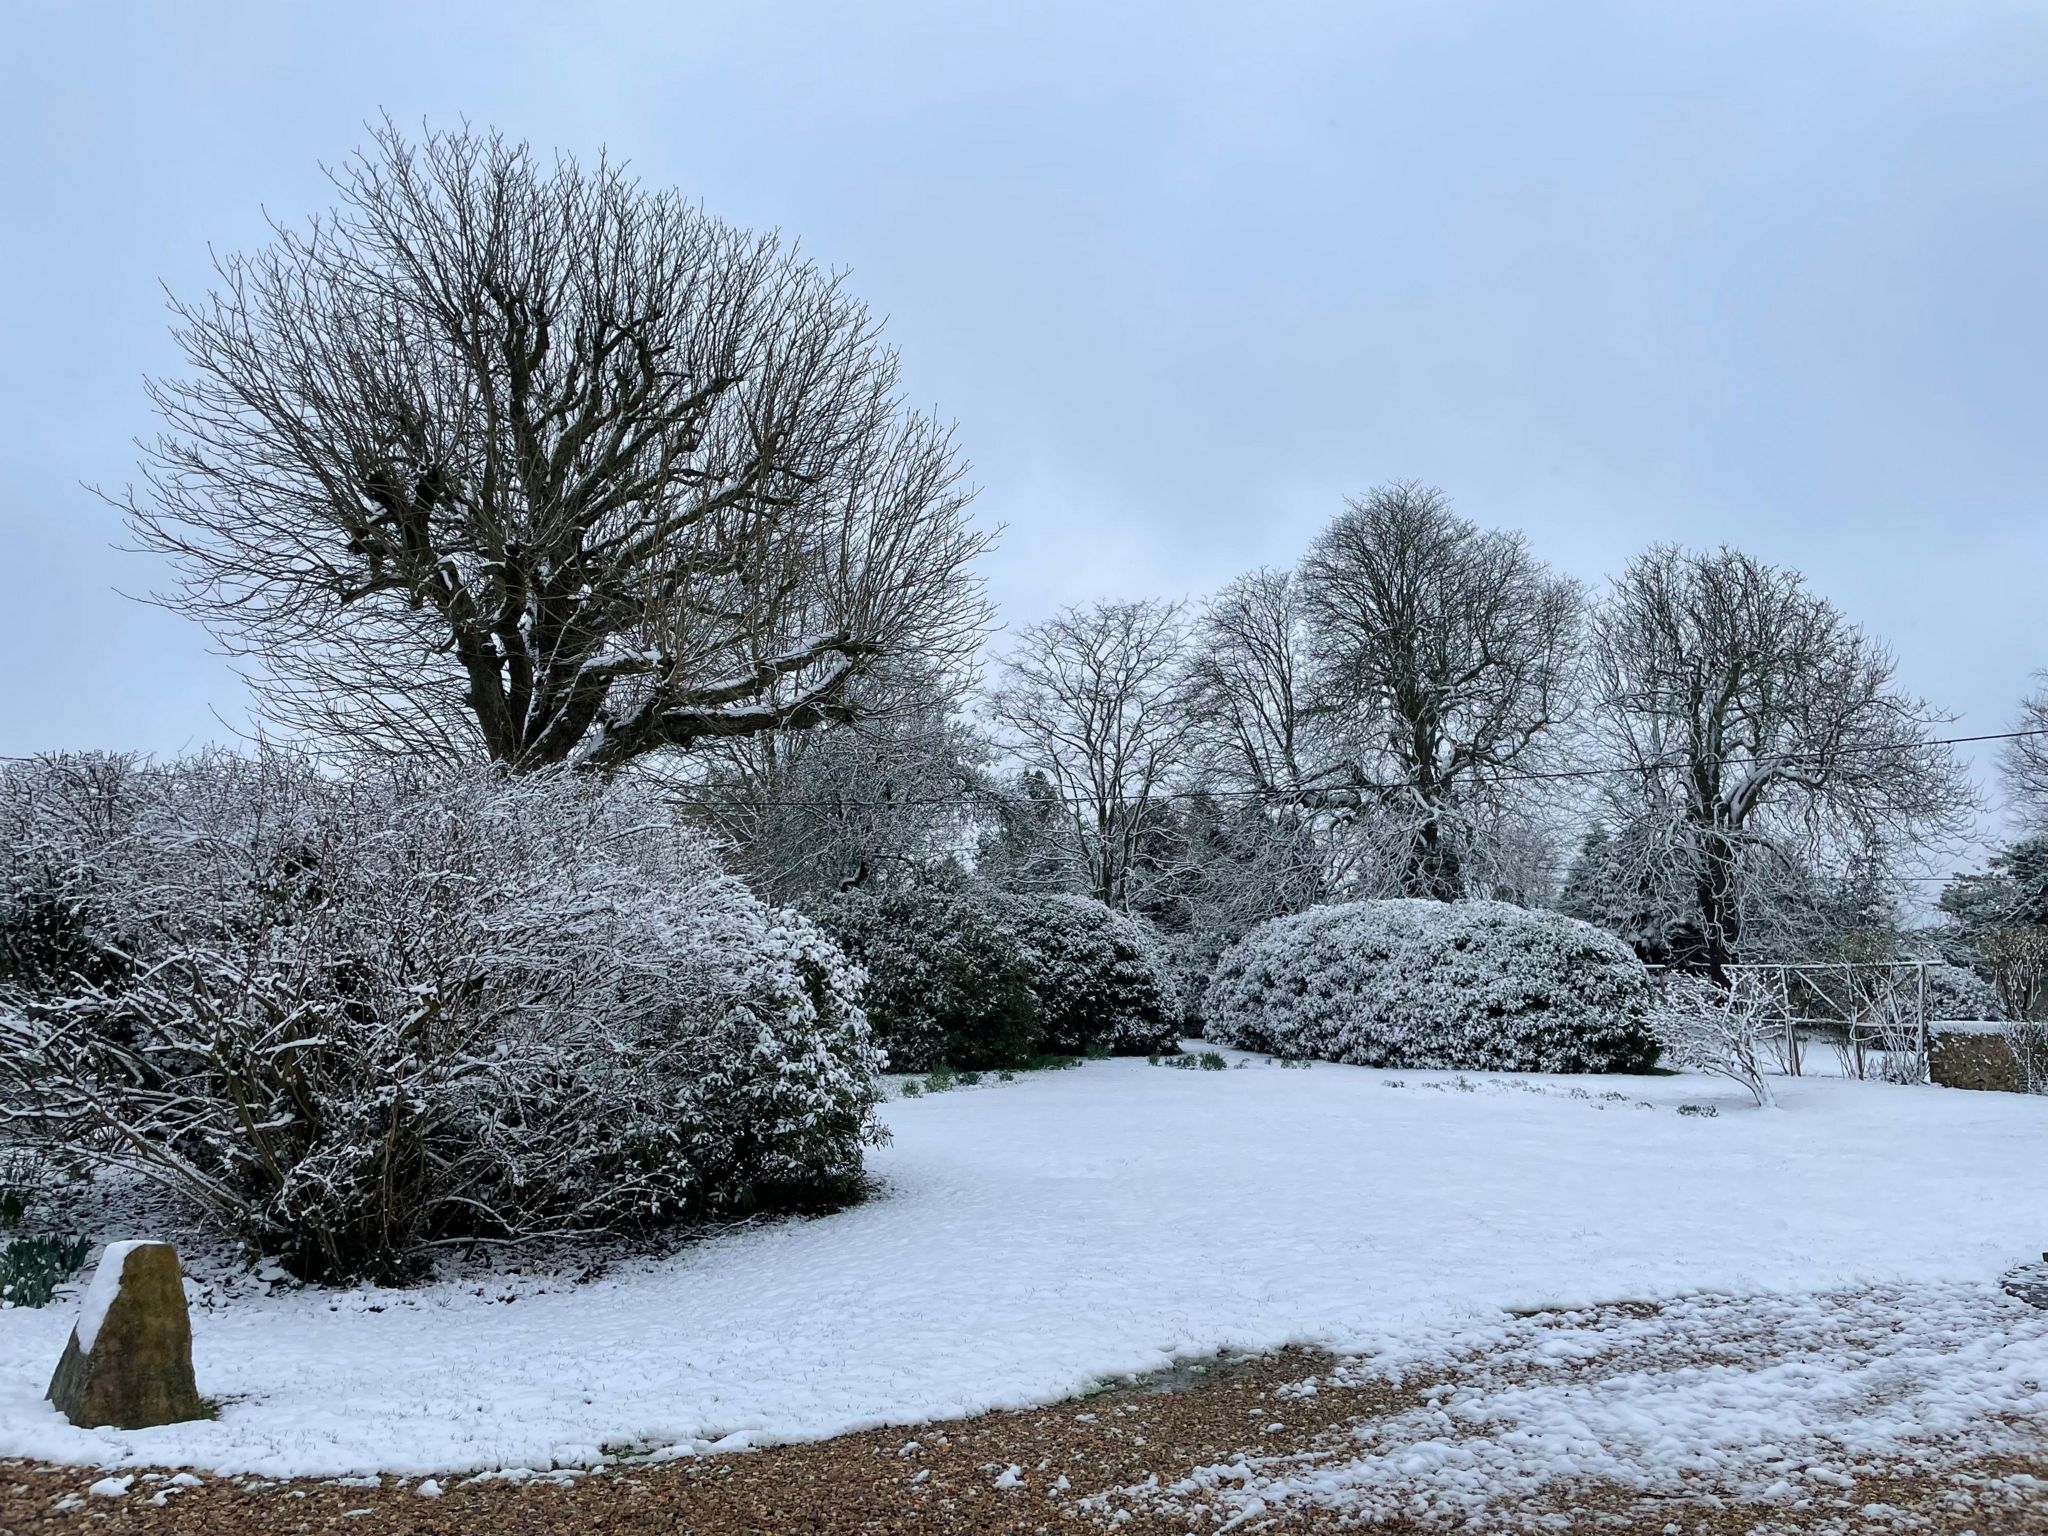 Snowy scenes in Penn, Buckinghamshire